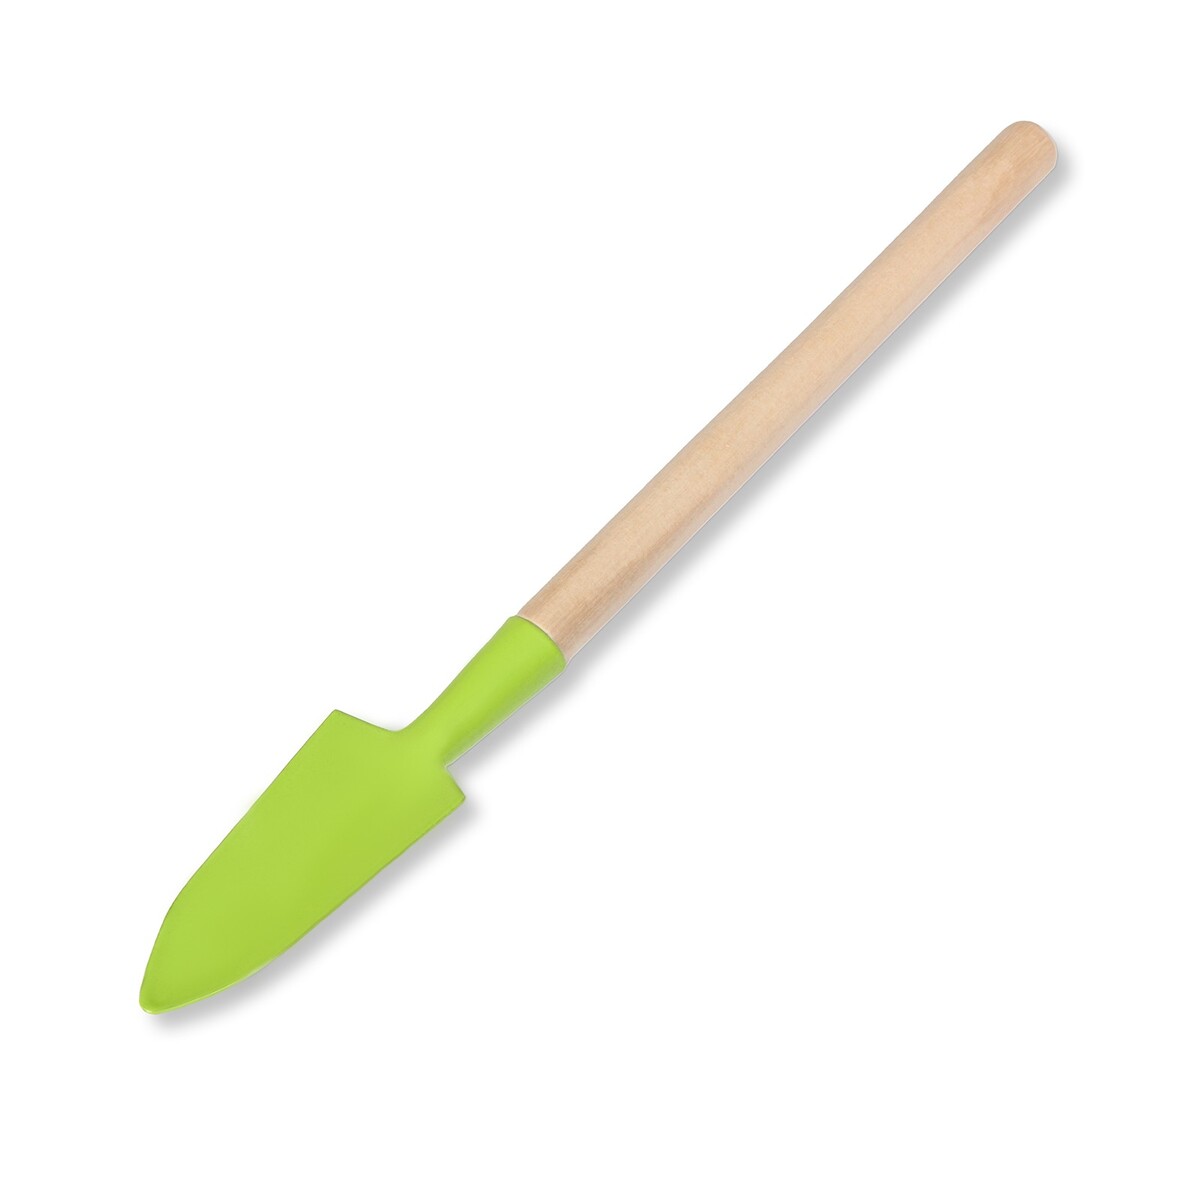 фото Набор садового инструмента, 3 предмета: рыхлитель, совок, грабли, длина 20 см greengo